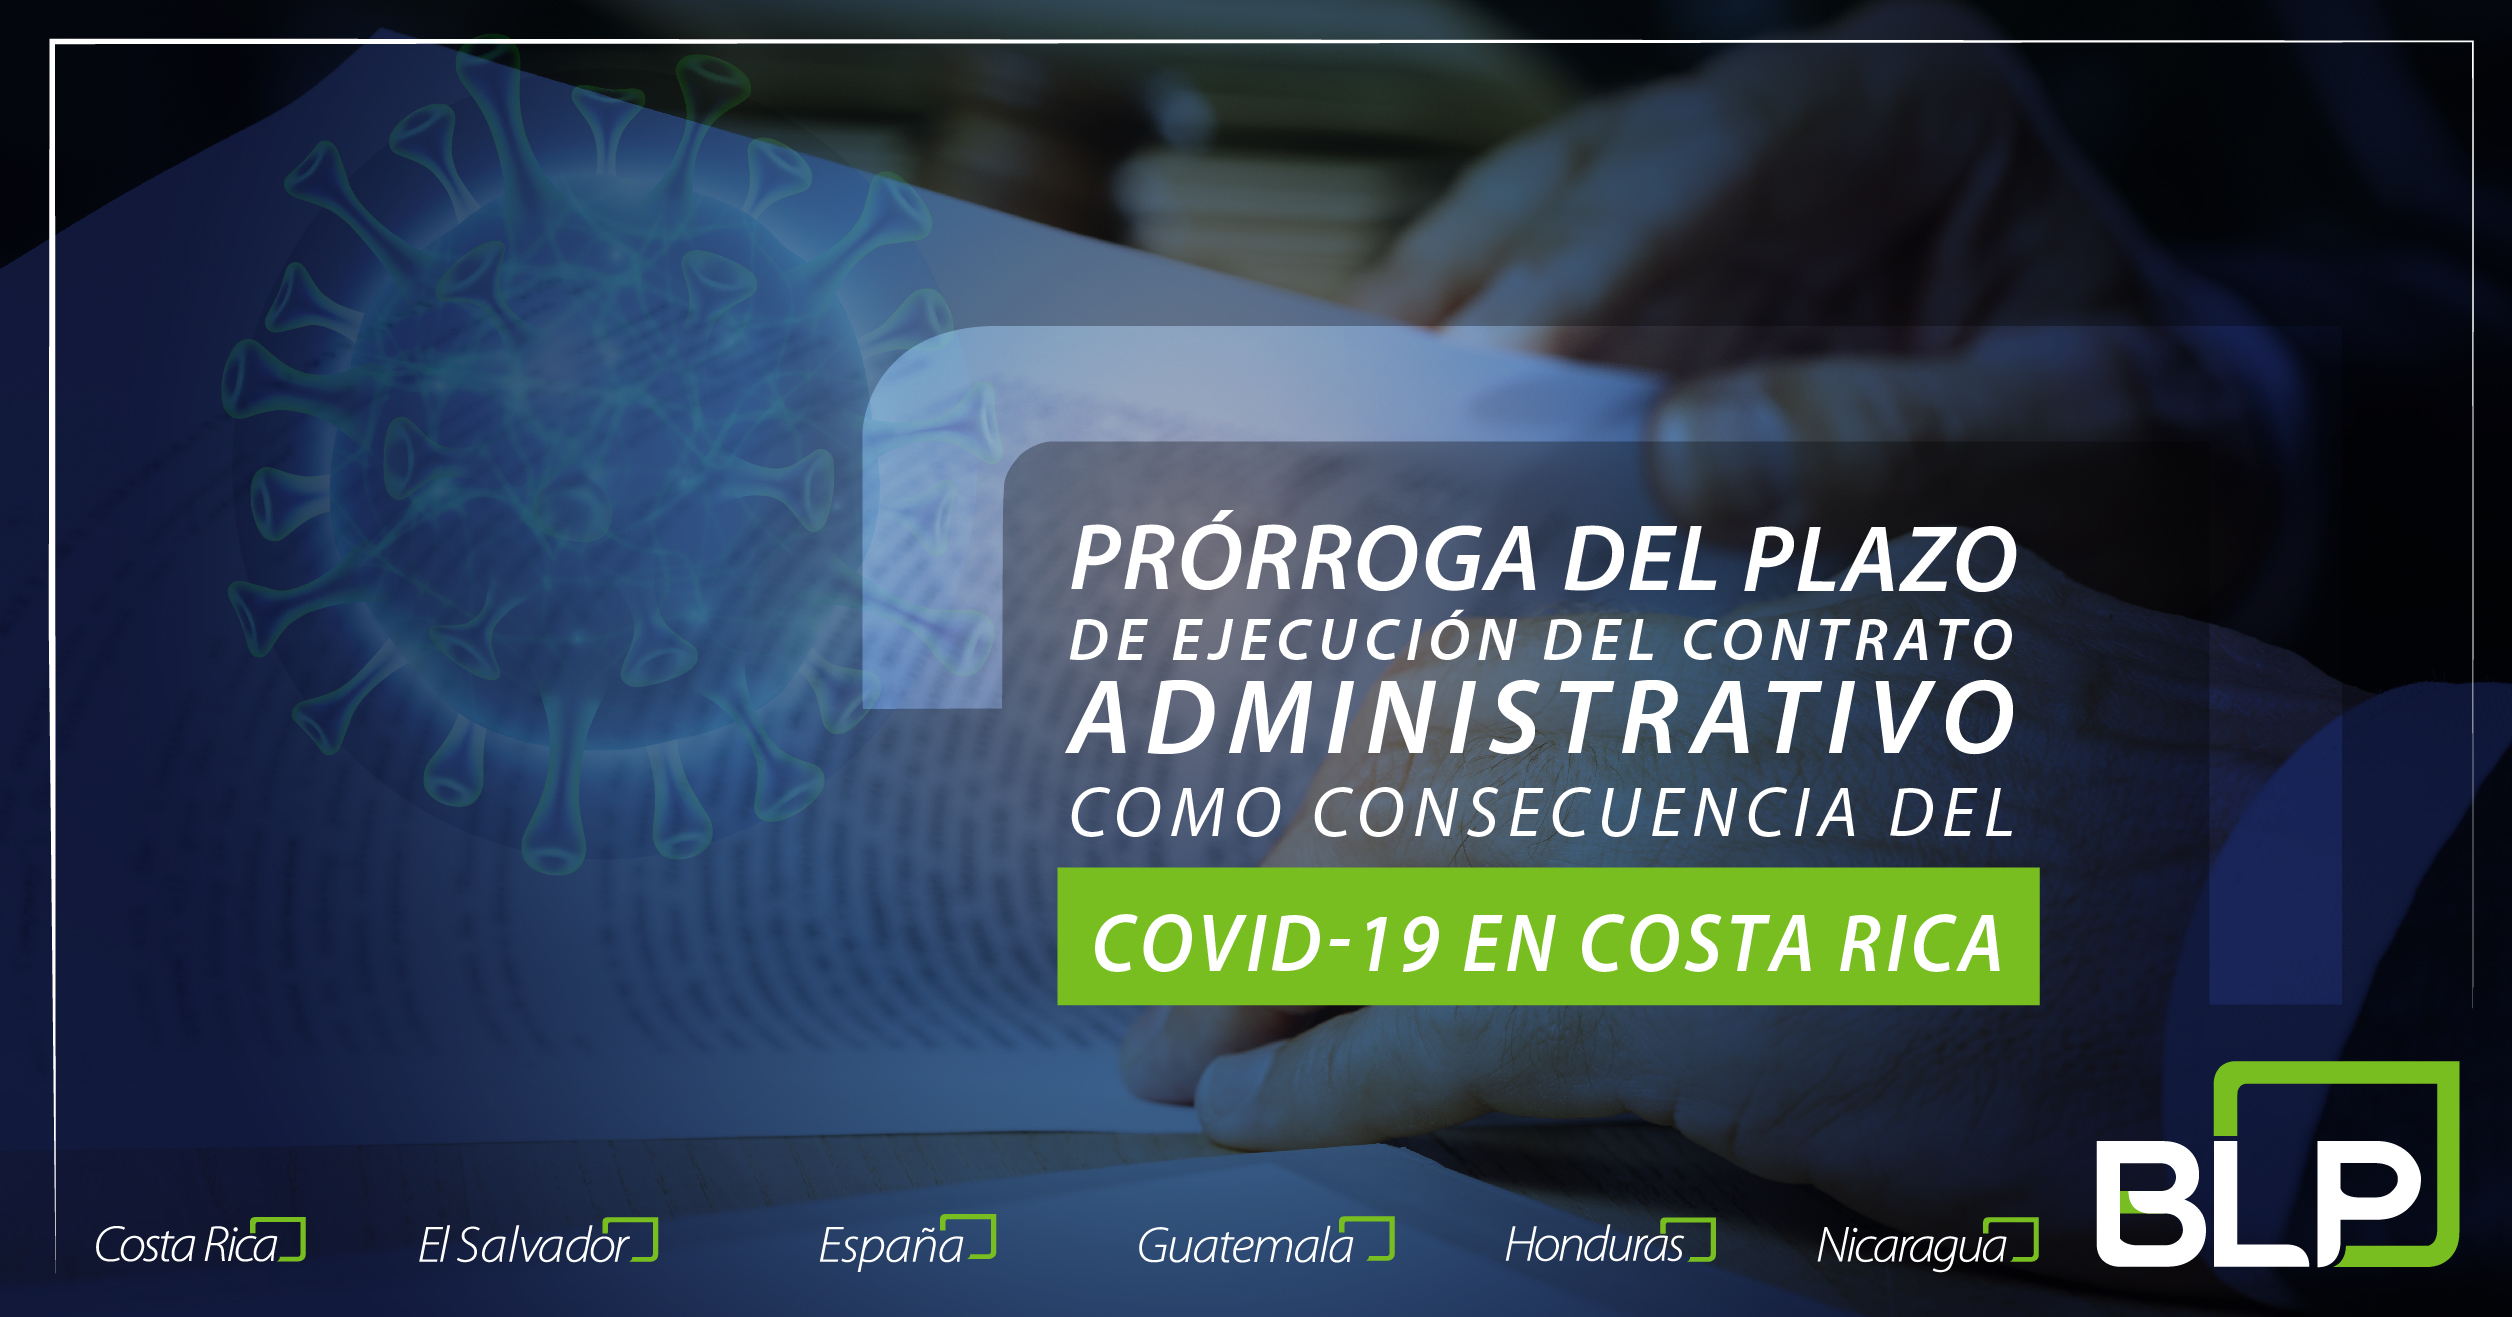 Prórroga del plazo de ejecución o de entrega del objeto del contrato administrativo como consecuencia de la pandemia por COVID-19.